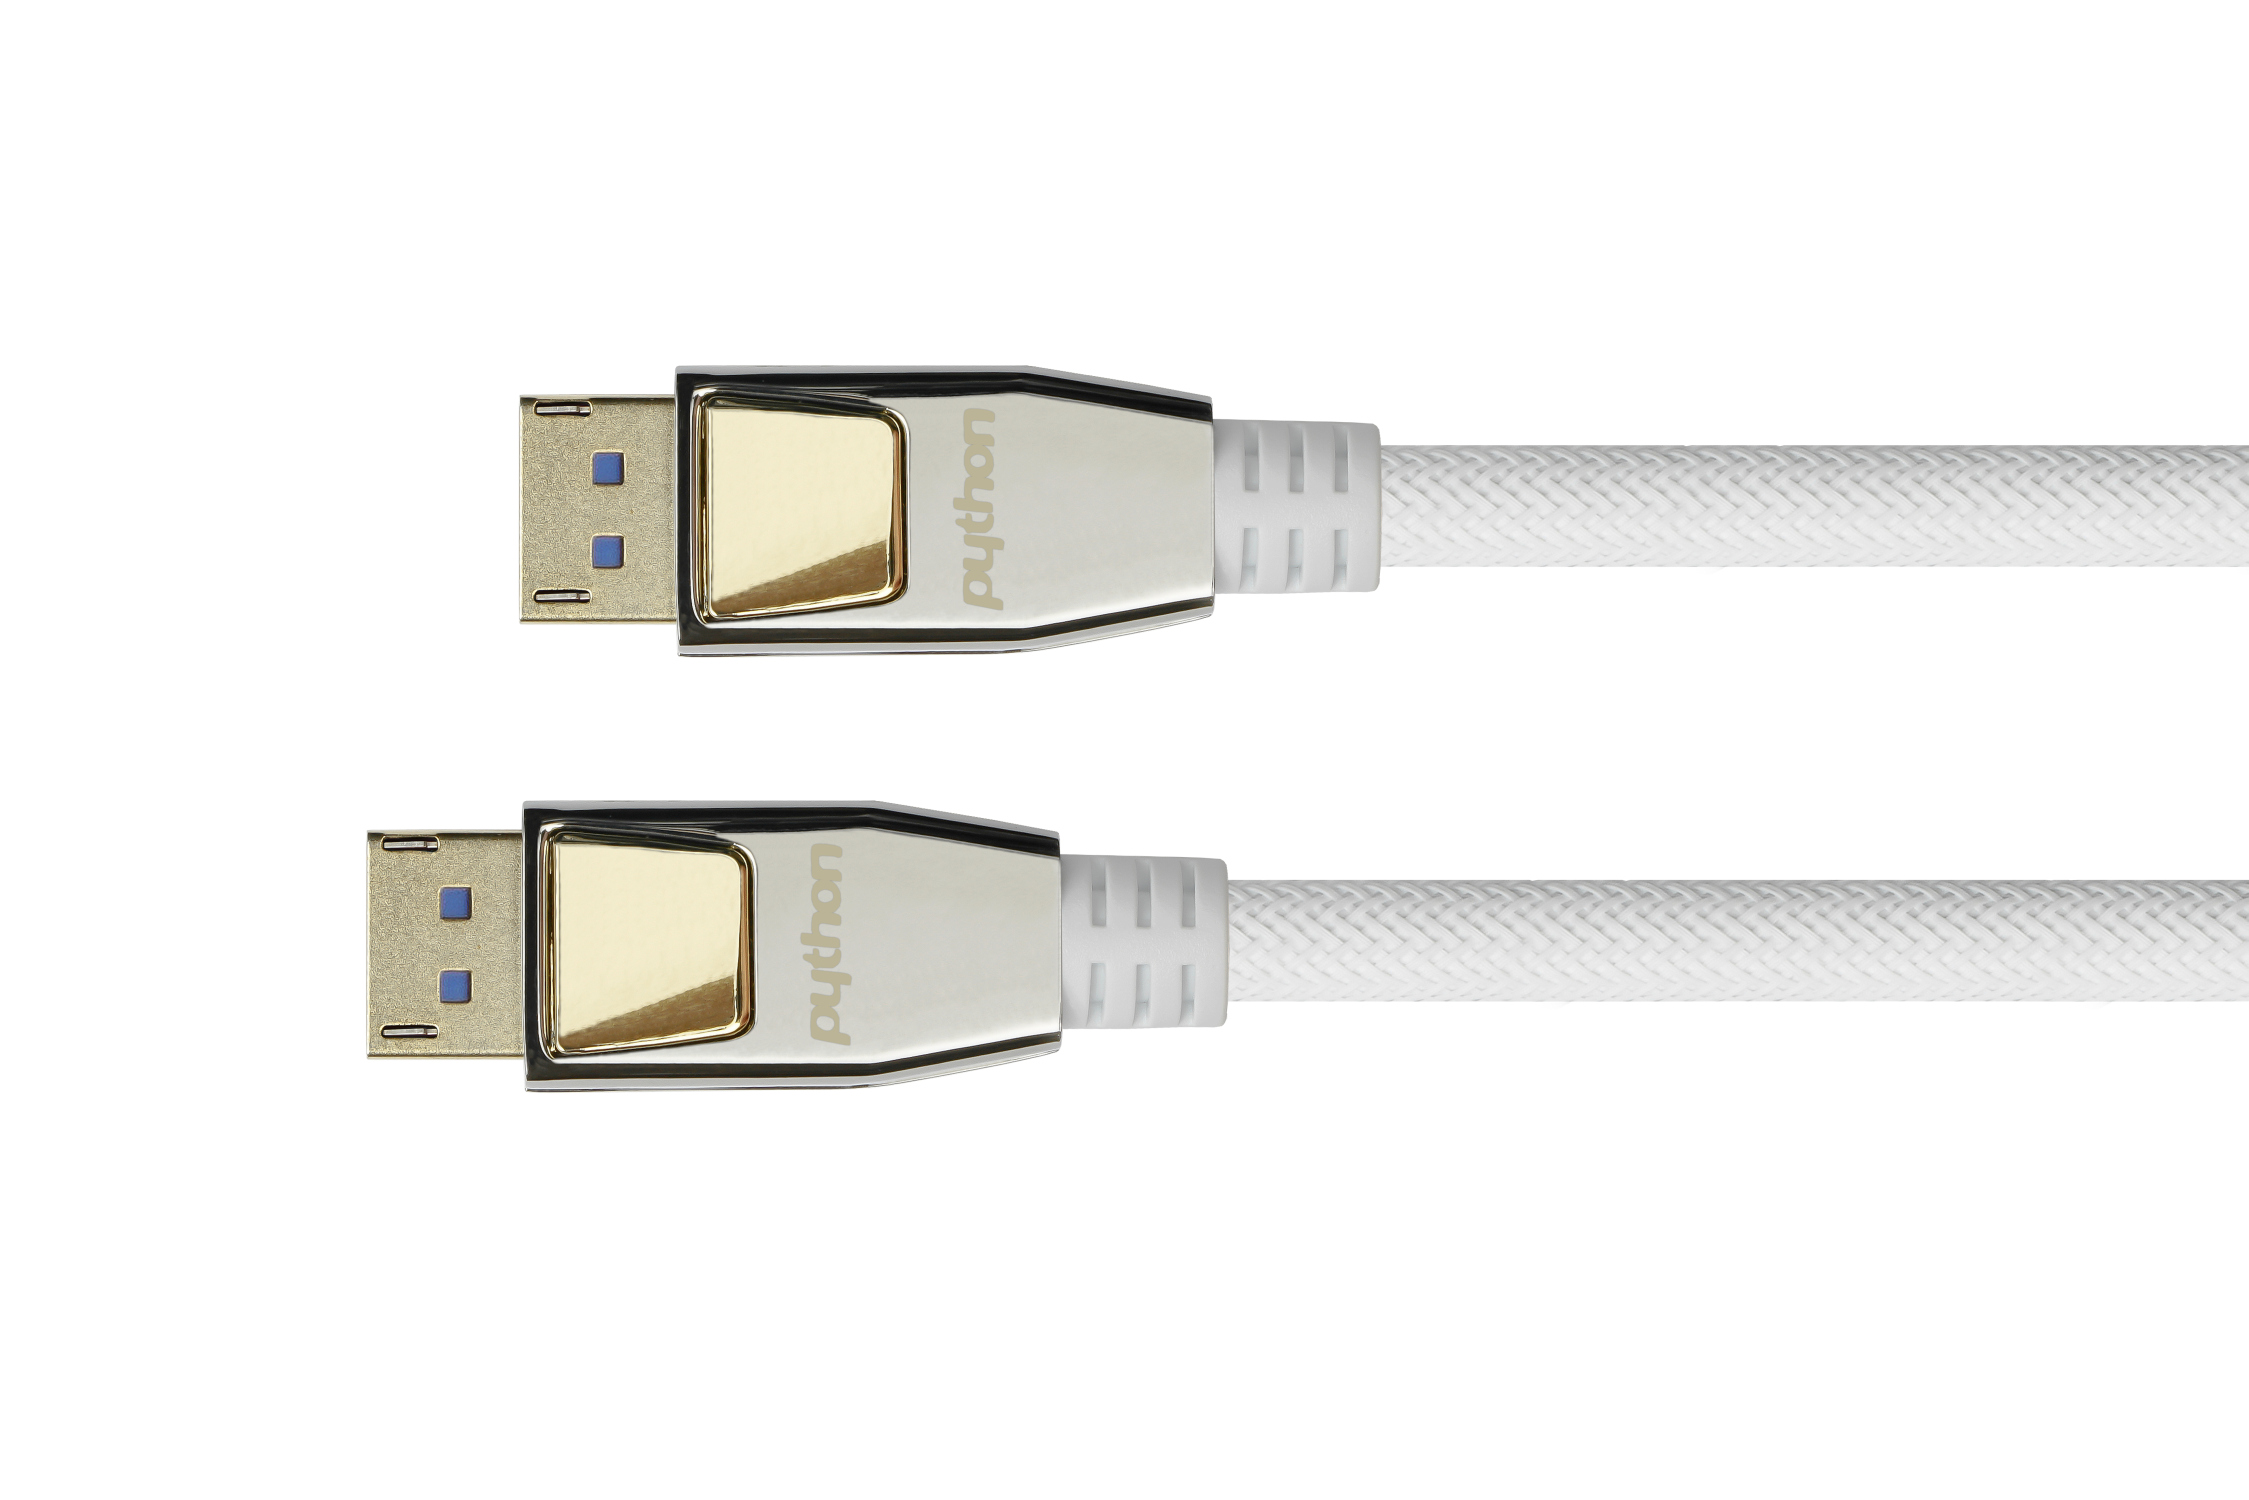 PREMIUM DisplayPort 2.0 Kabel, 54 Gbit/s, UHBR 13.5, 4K@240Hz / 8K@60Hz, Nylongeflecht weiß, 1m